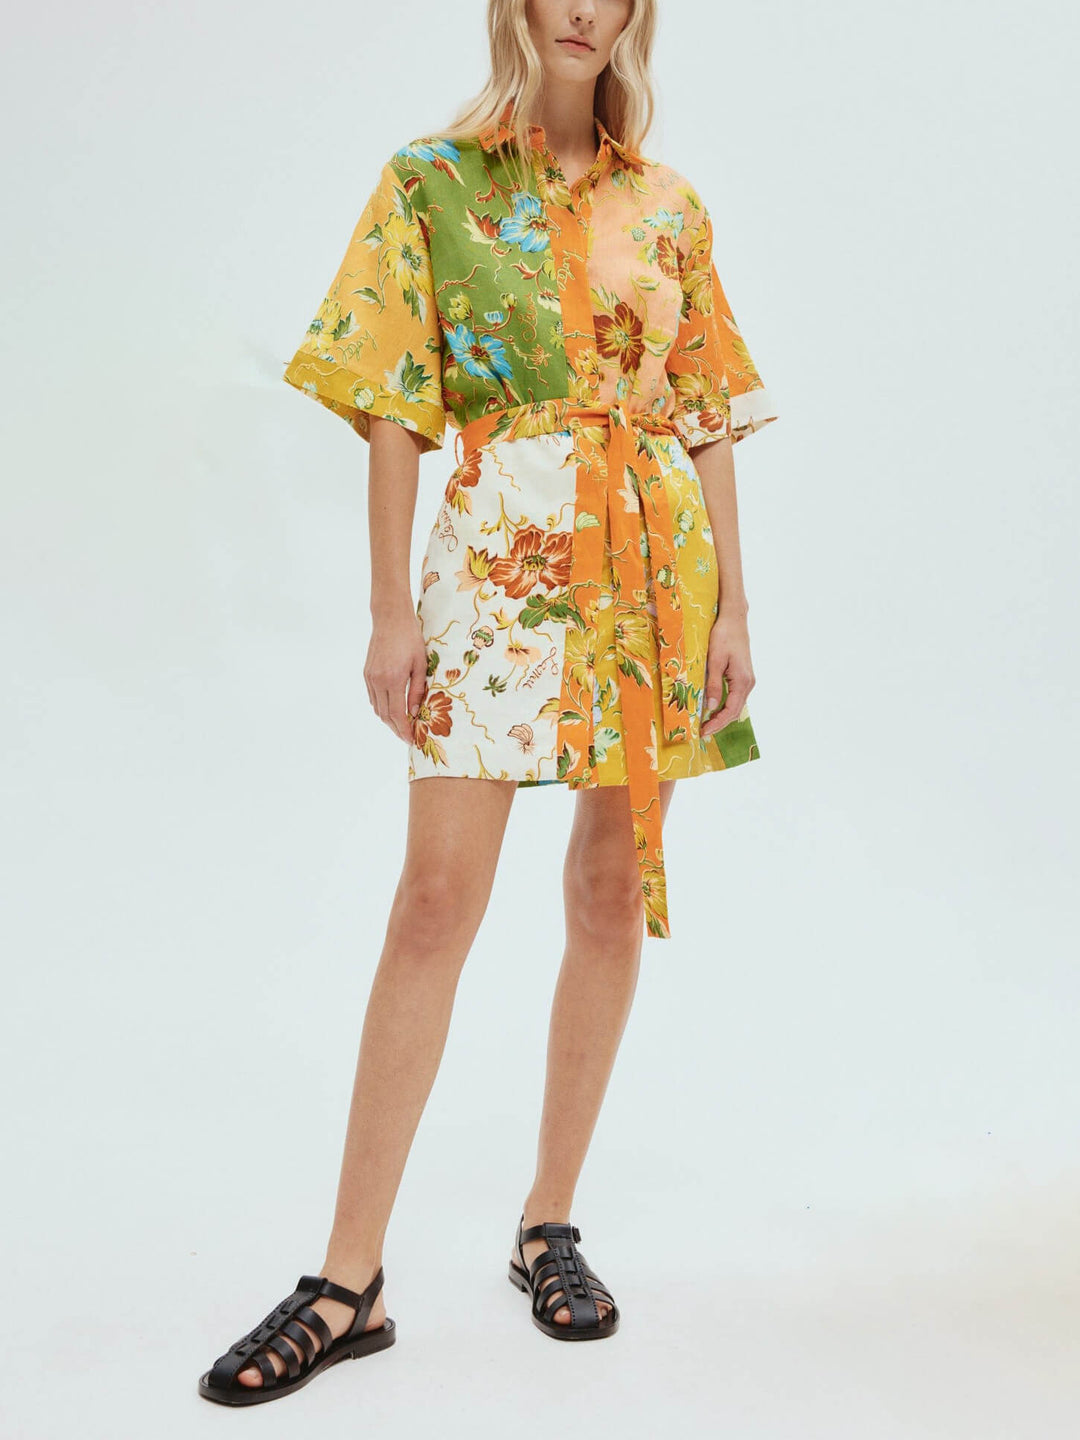 Μοναδικό μίνι φόρεμα με floral print σε αντίθεση